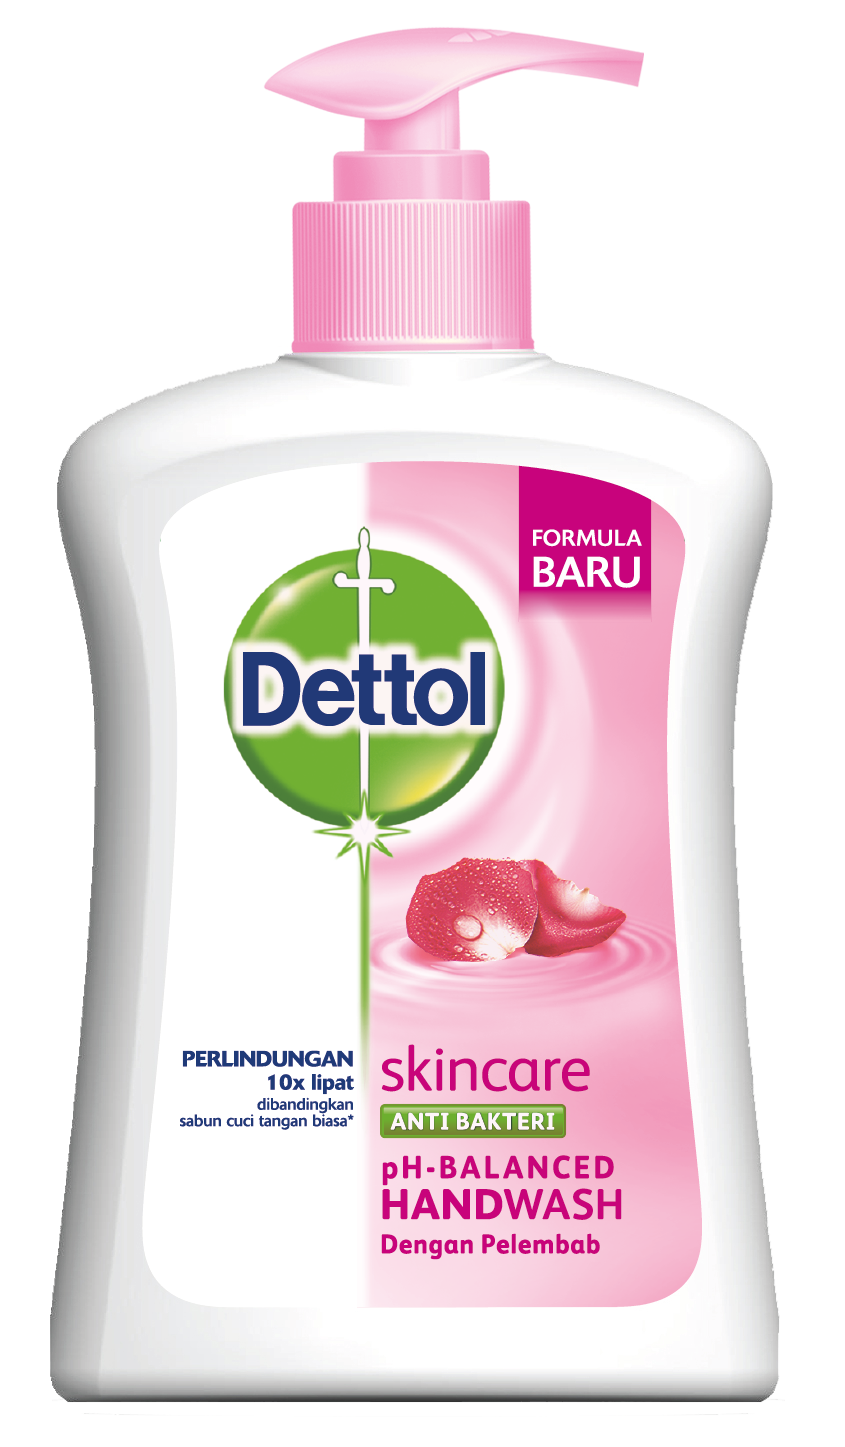 Dettol Anti Bacterial Skincare Handwash Dettol Skincare